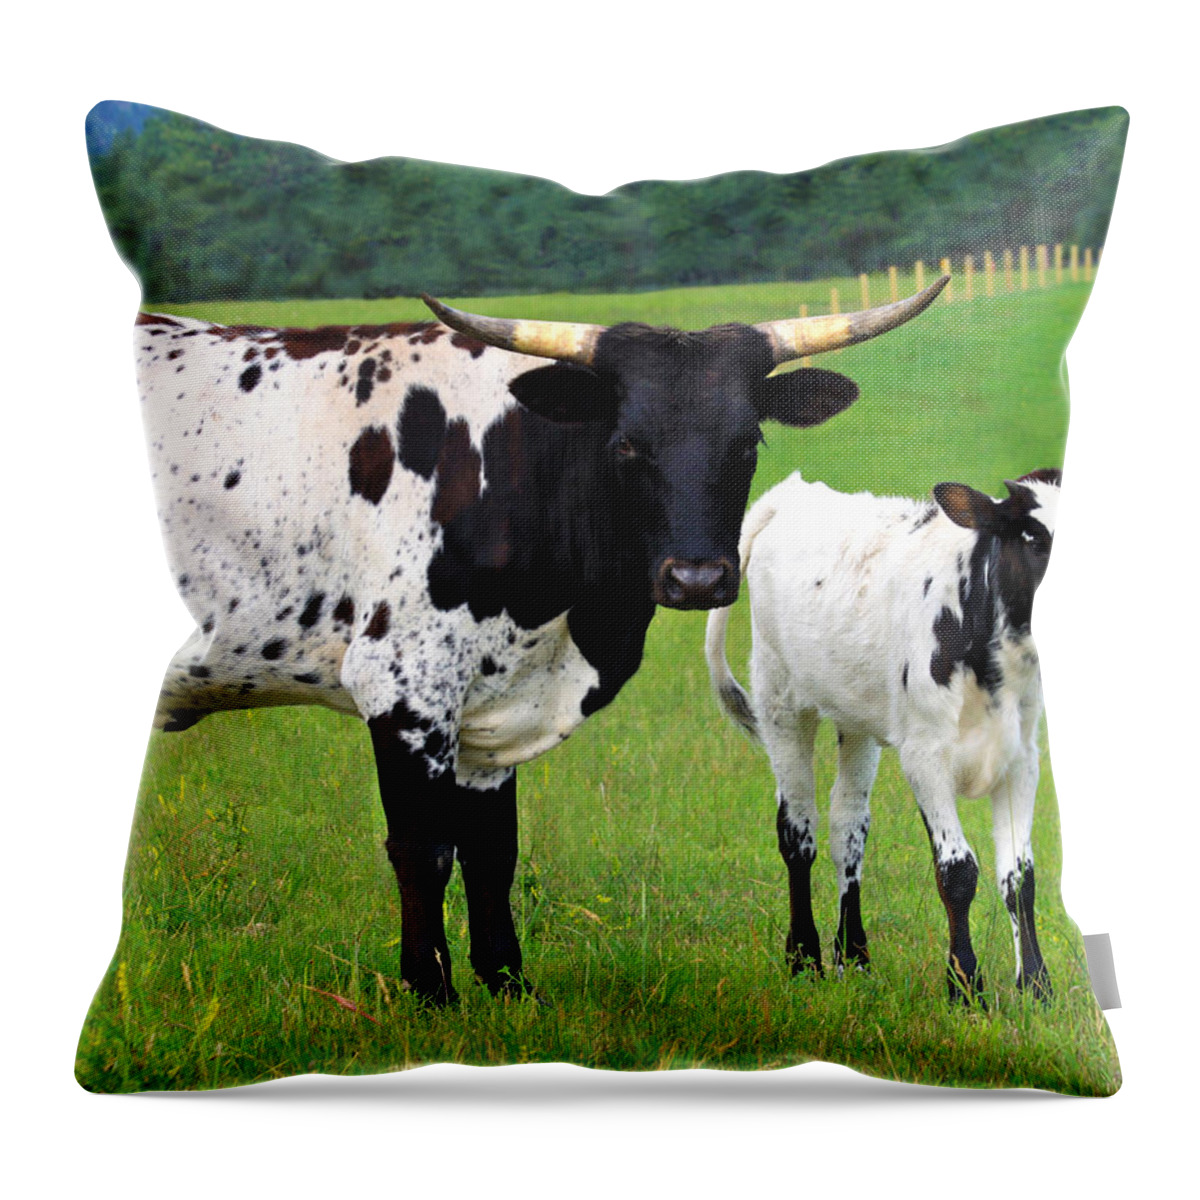 Texas Throw Pillow featuring the photograph Texas Longhorn Cow and Calf by Karon Melillo DeVega